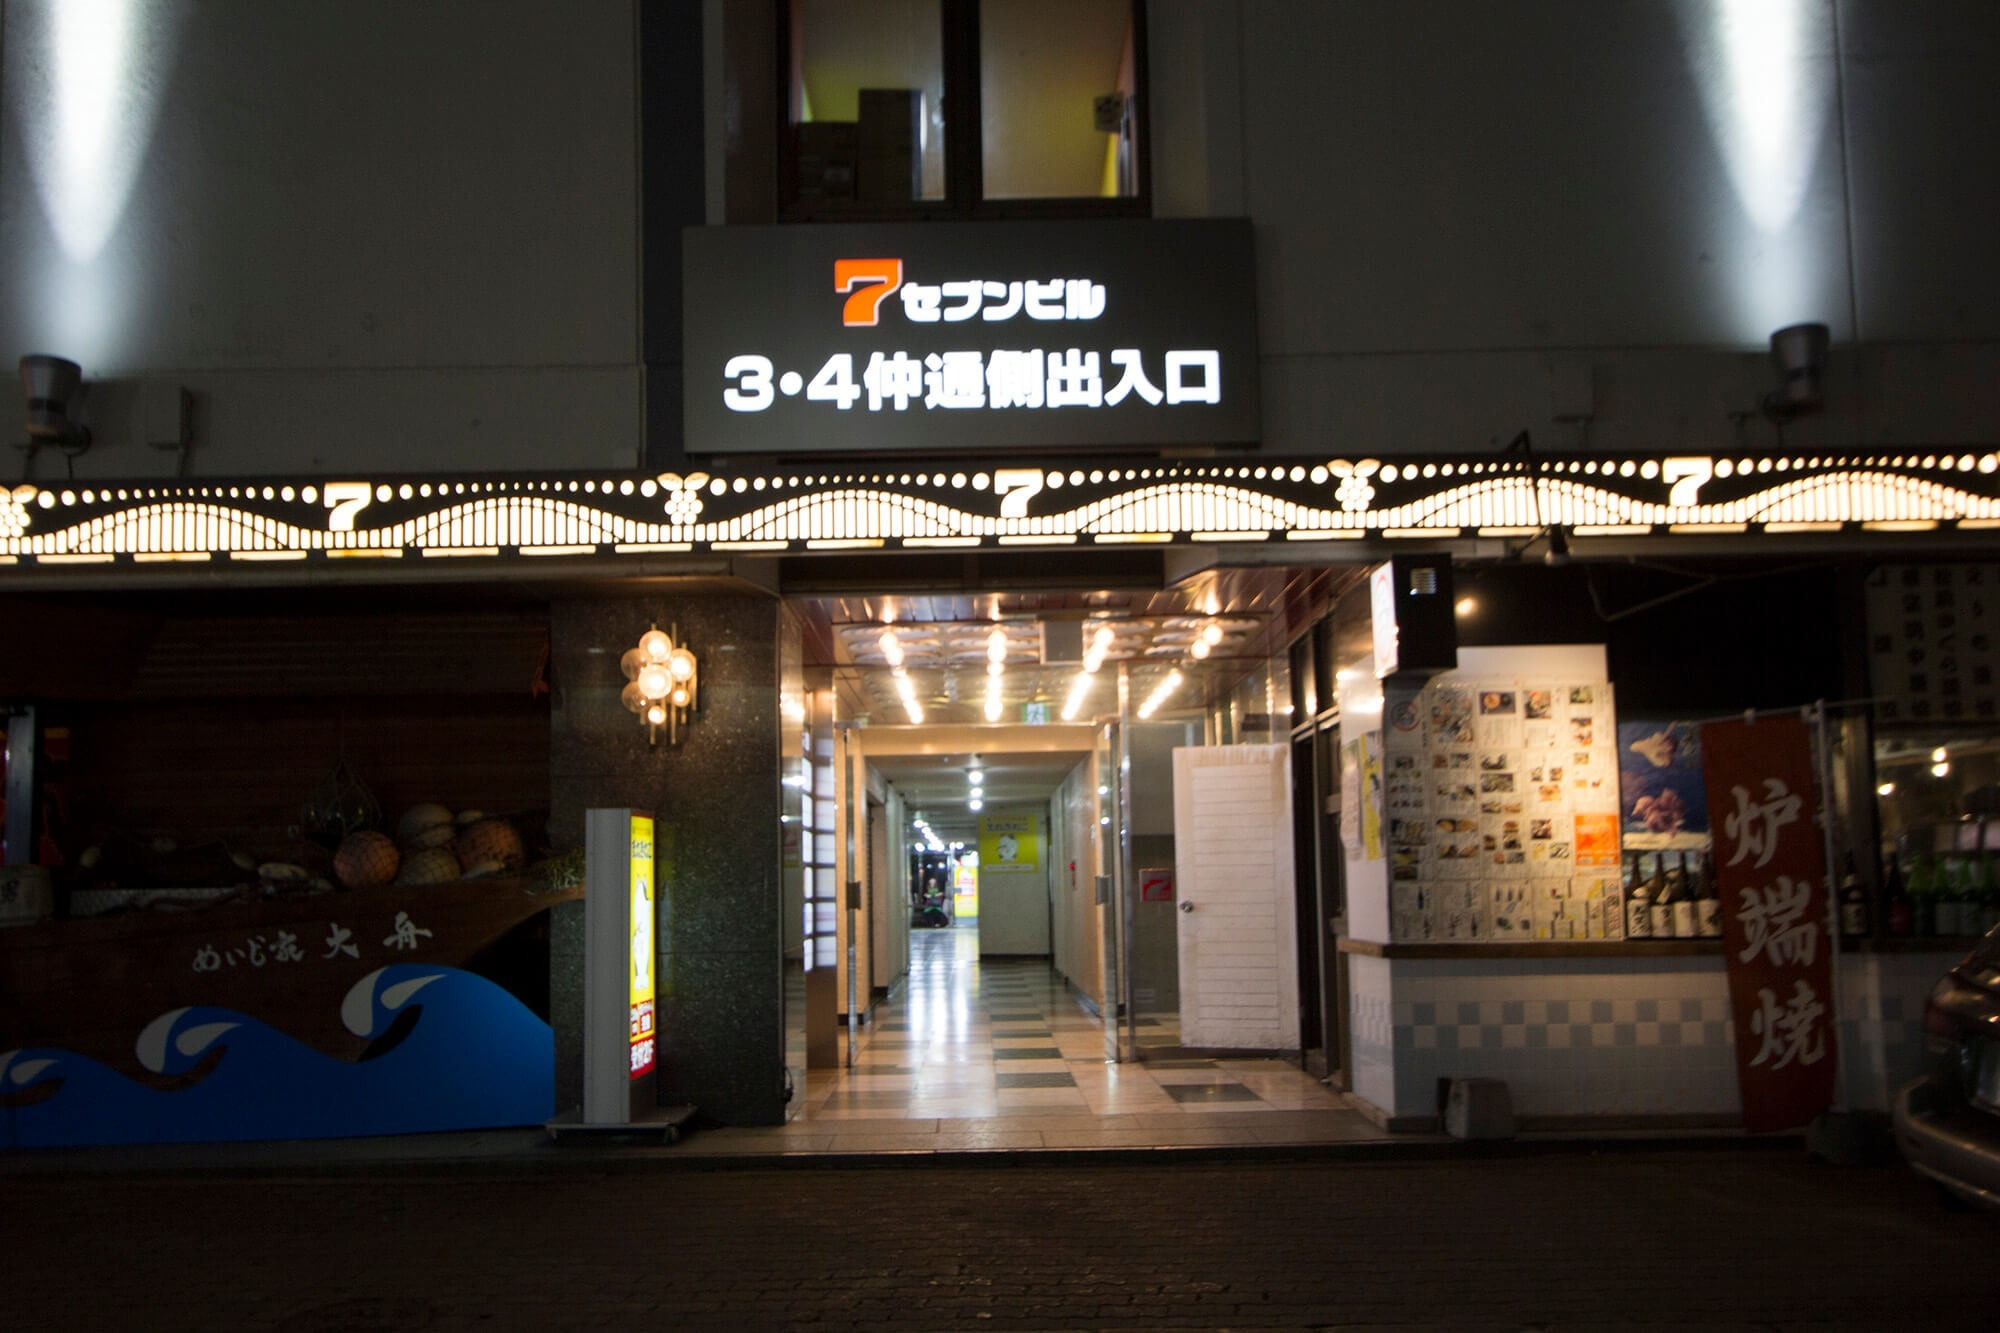 03【Go to Asahikawa】旭川駅近MAX12 FreeWi-Fi 繫華 三六 コンビニ